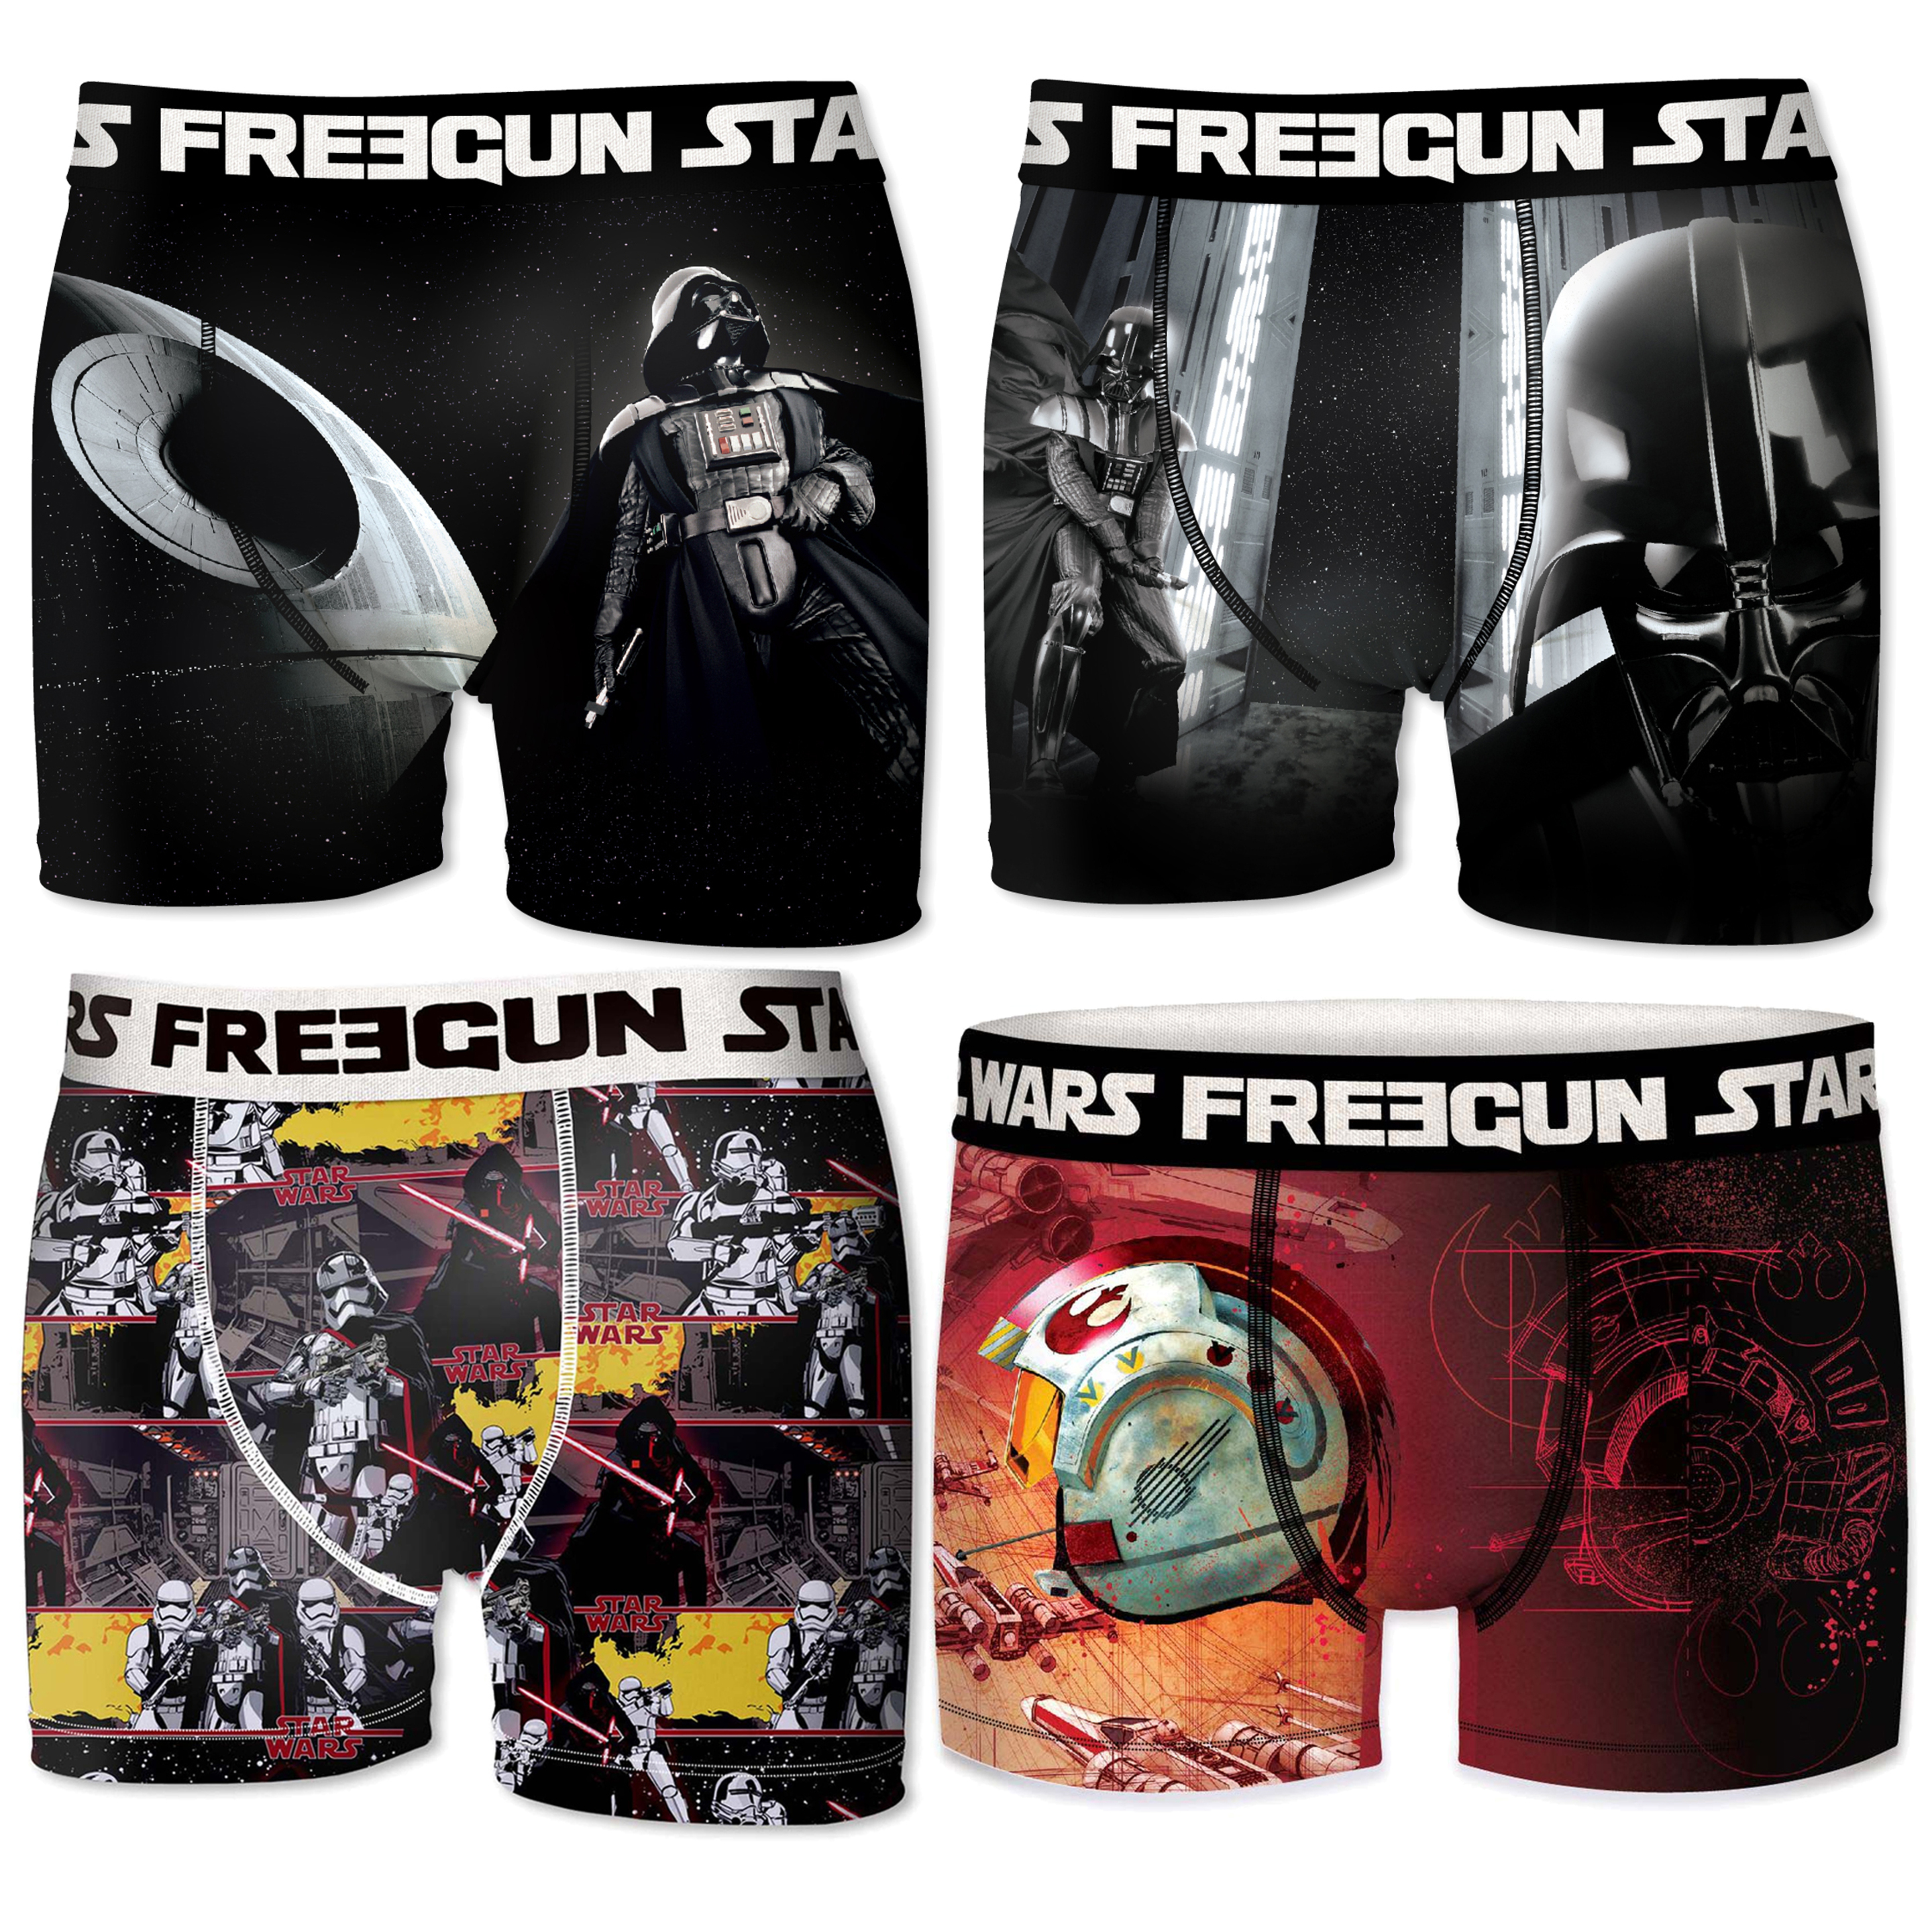 Calzoncillos Freegun Star Wars Pack 3